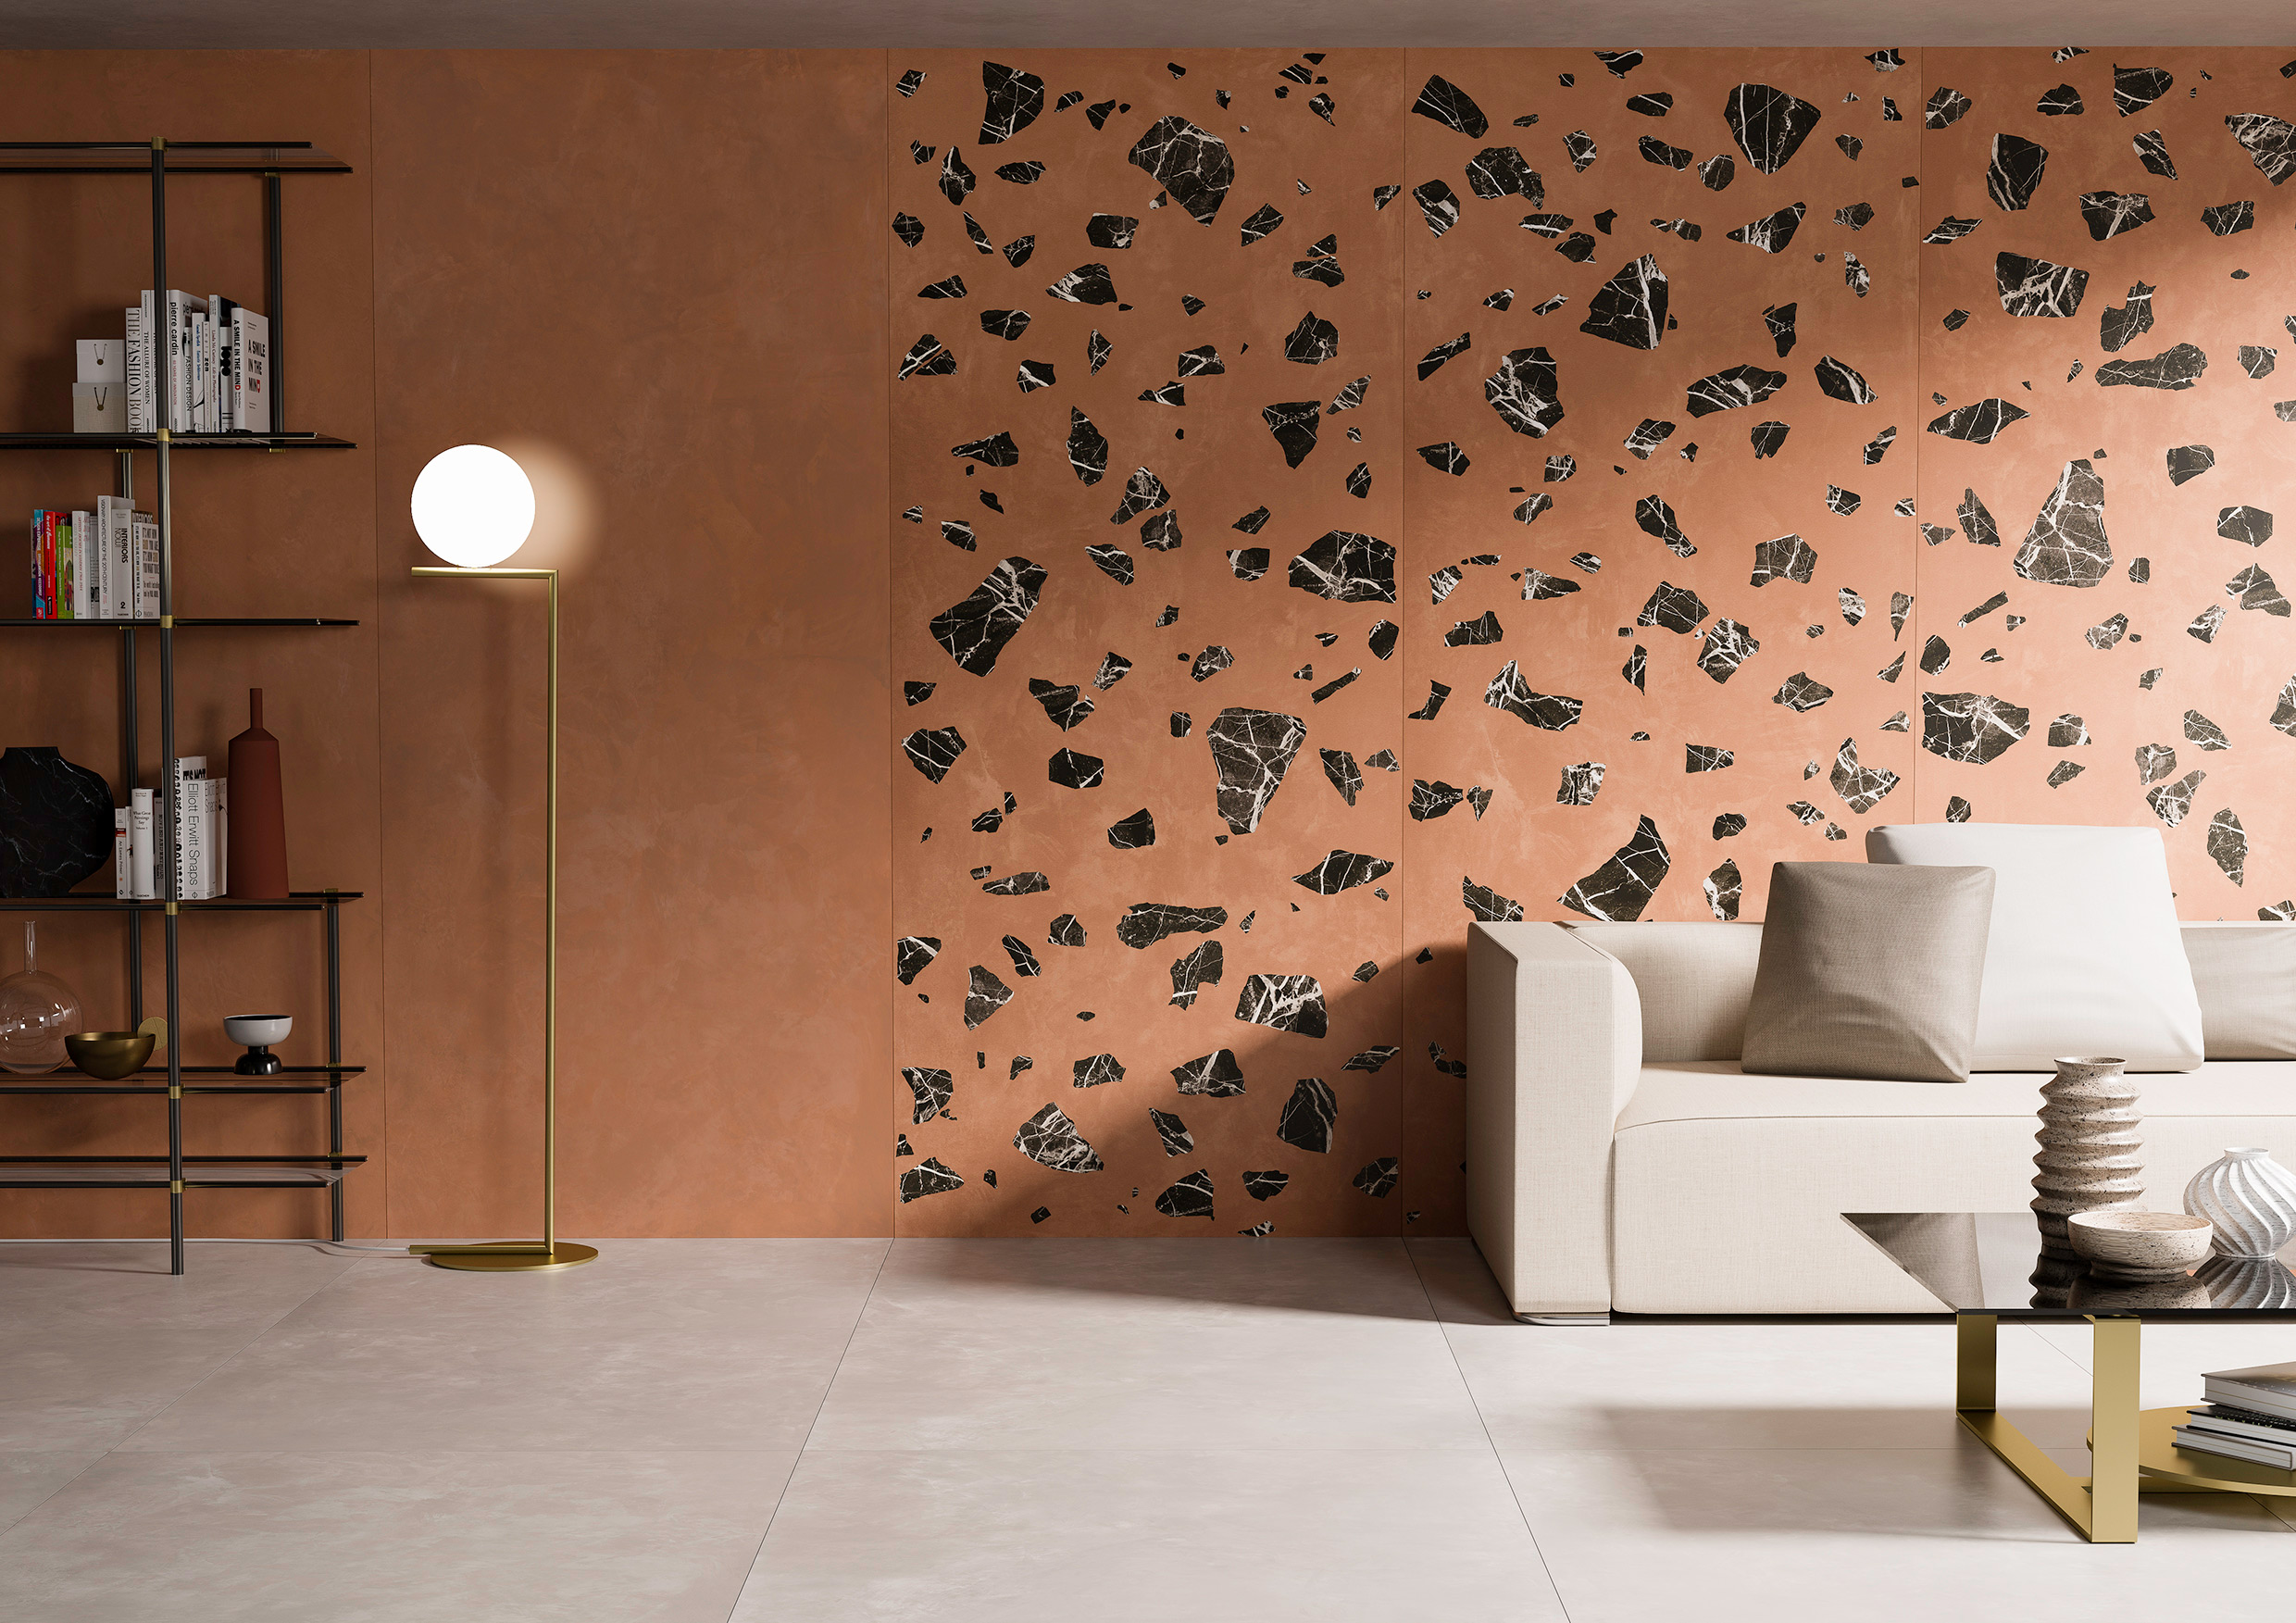 The wall decor in the interior design | Caesar Ceramics USA